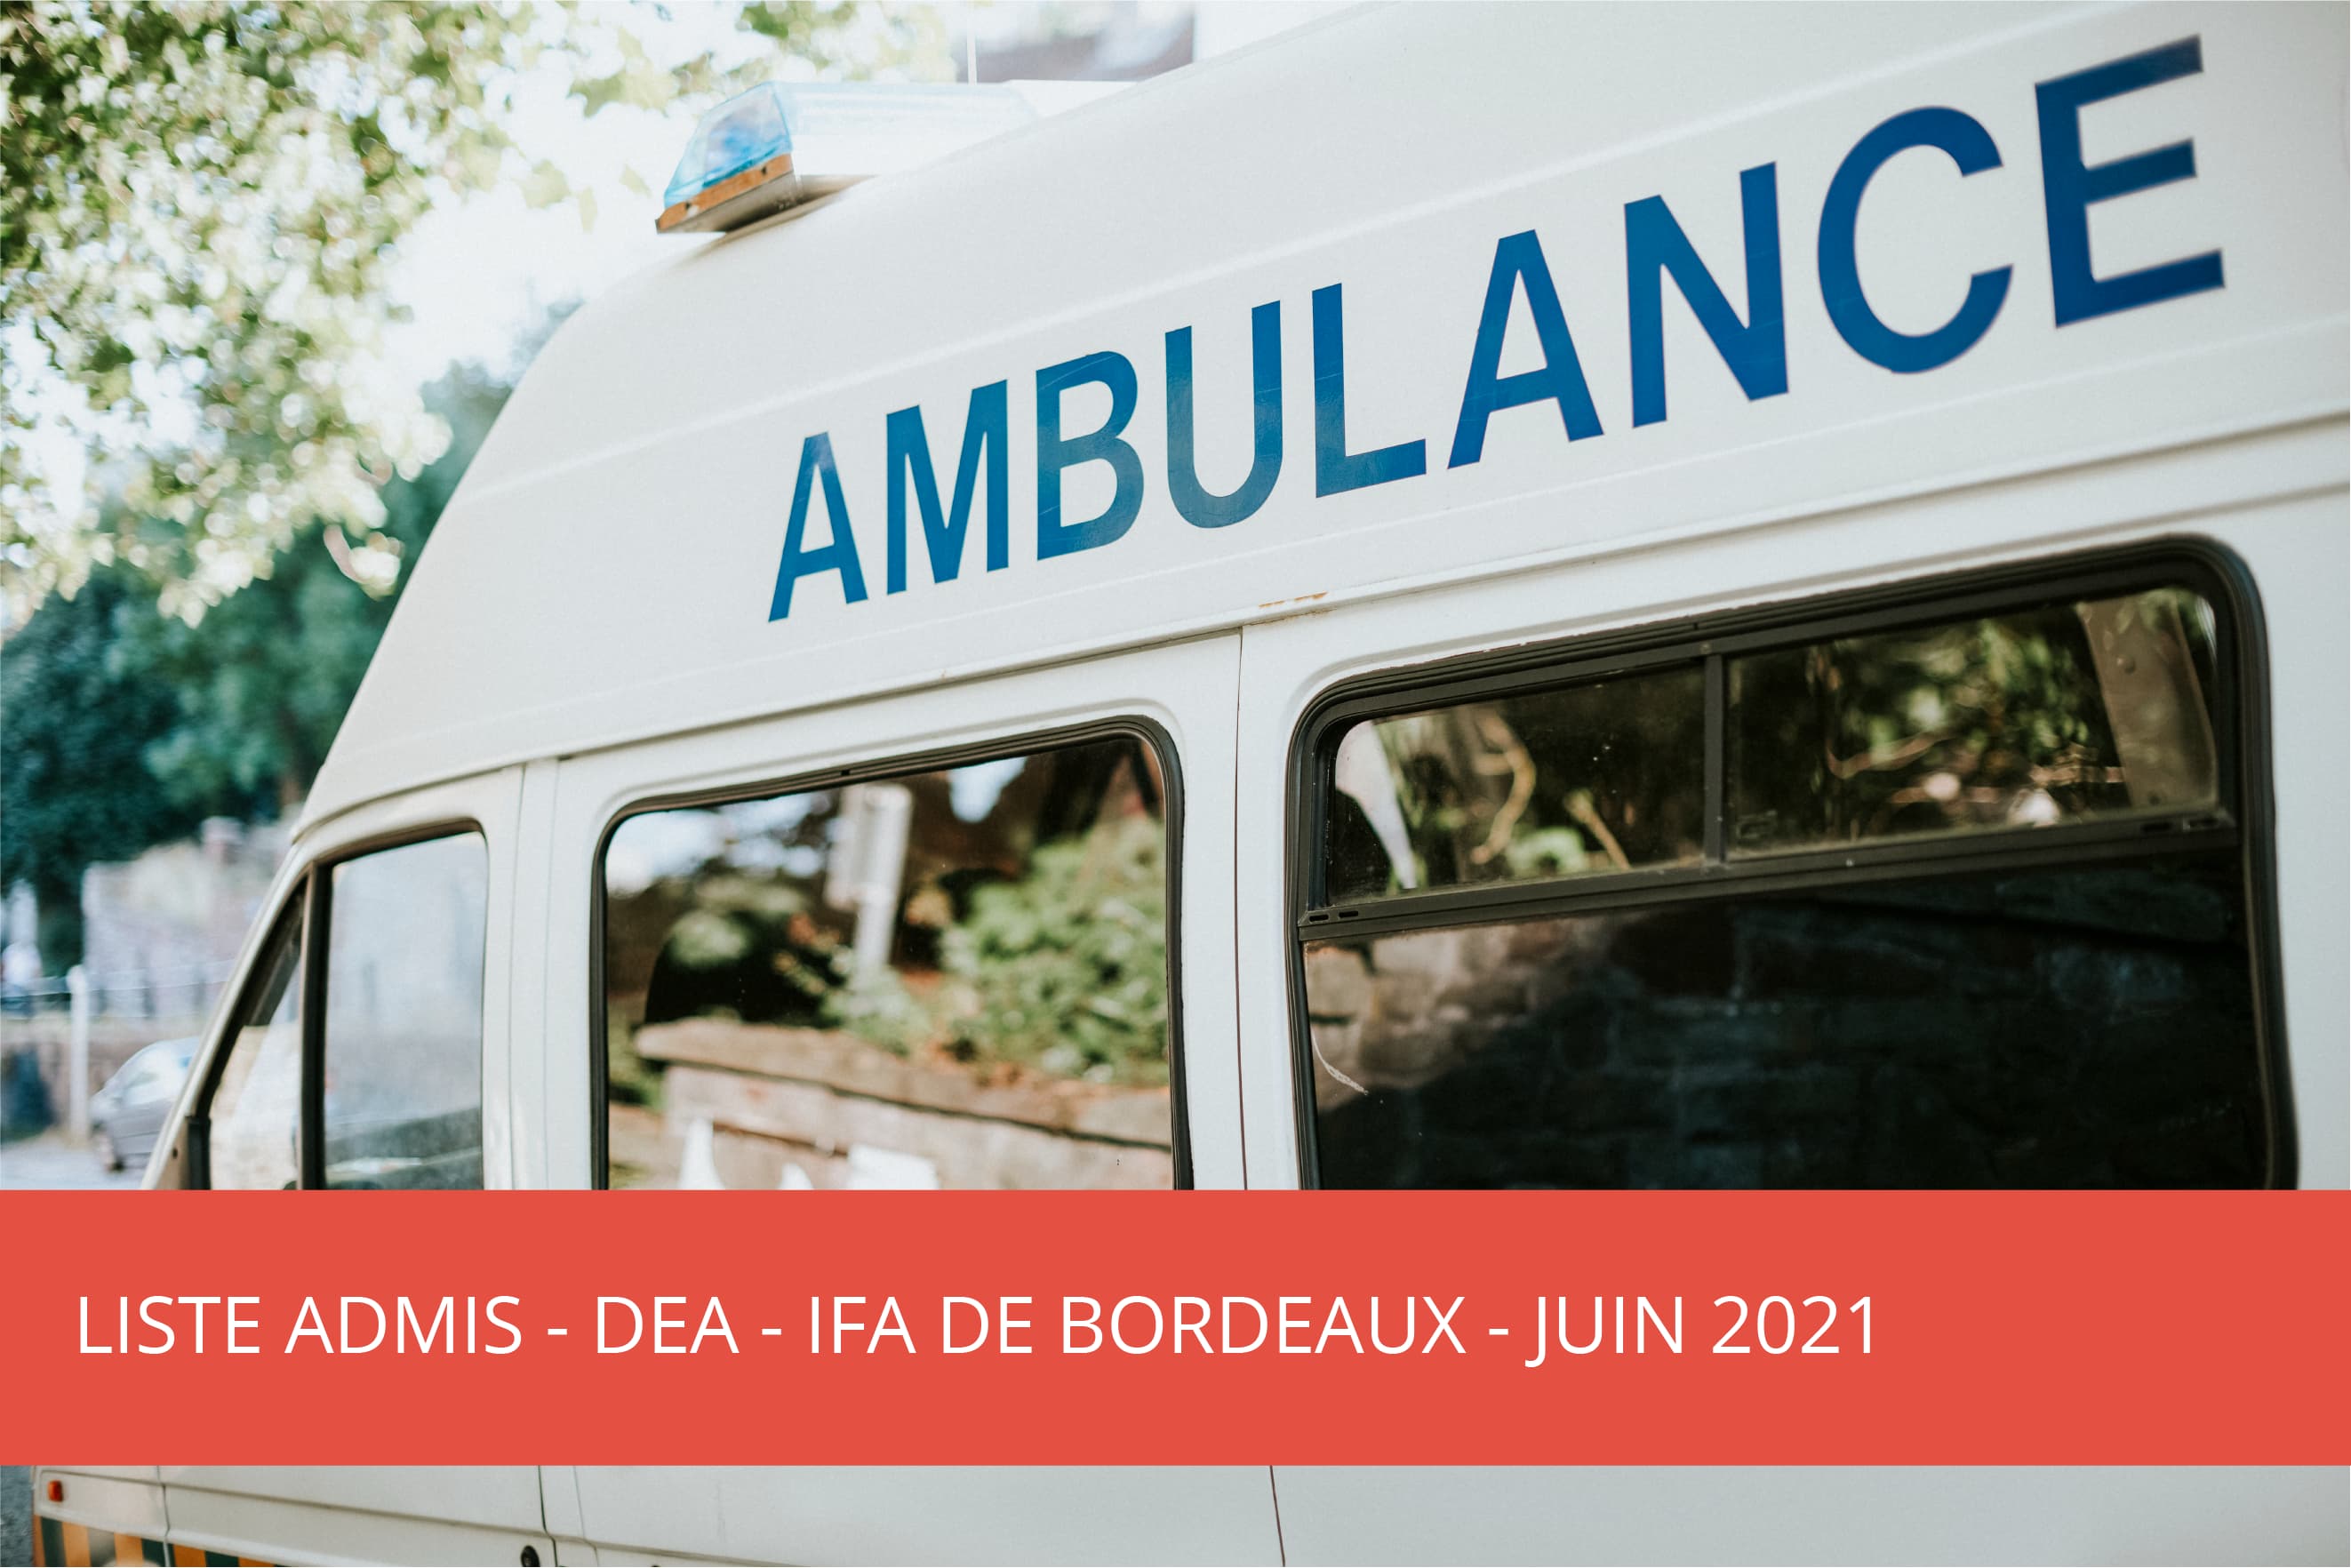 IFA Bordeaux : DEA – liste des candidats admis – juin 2021